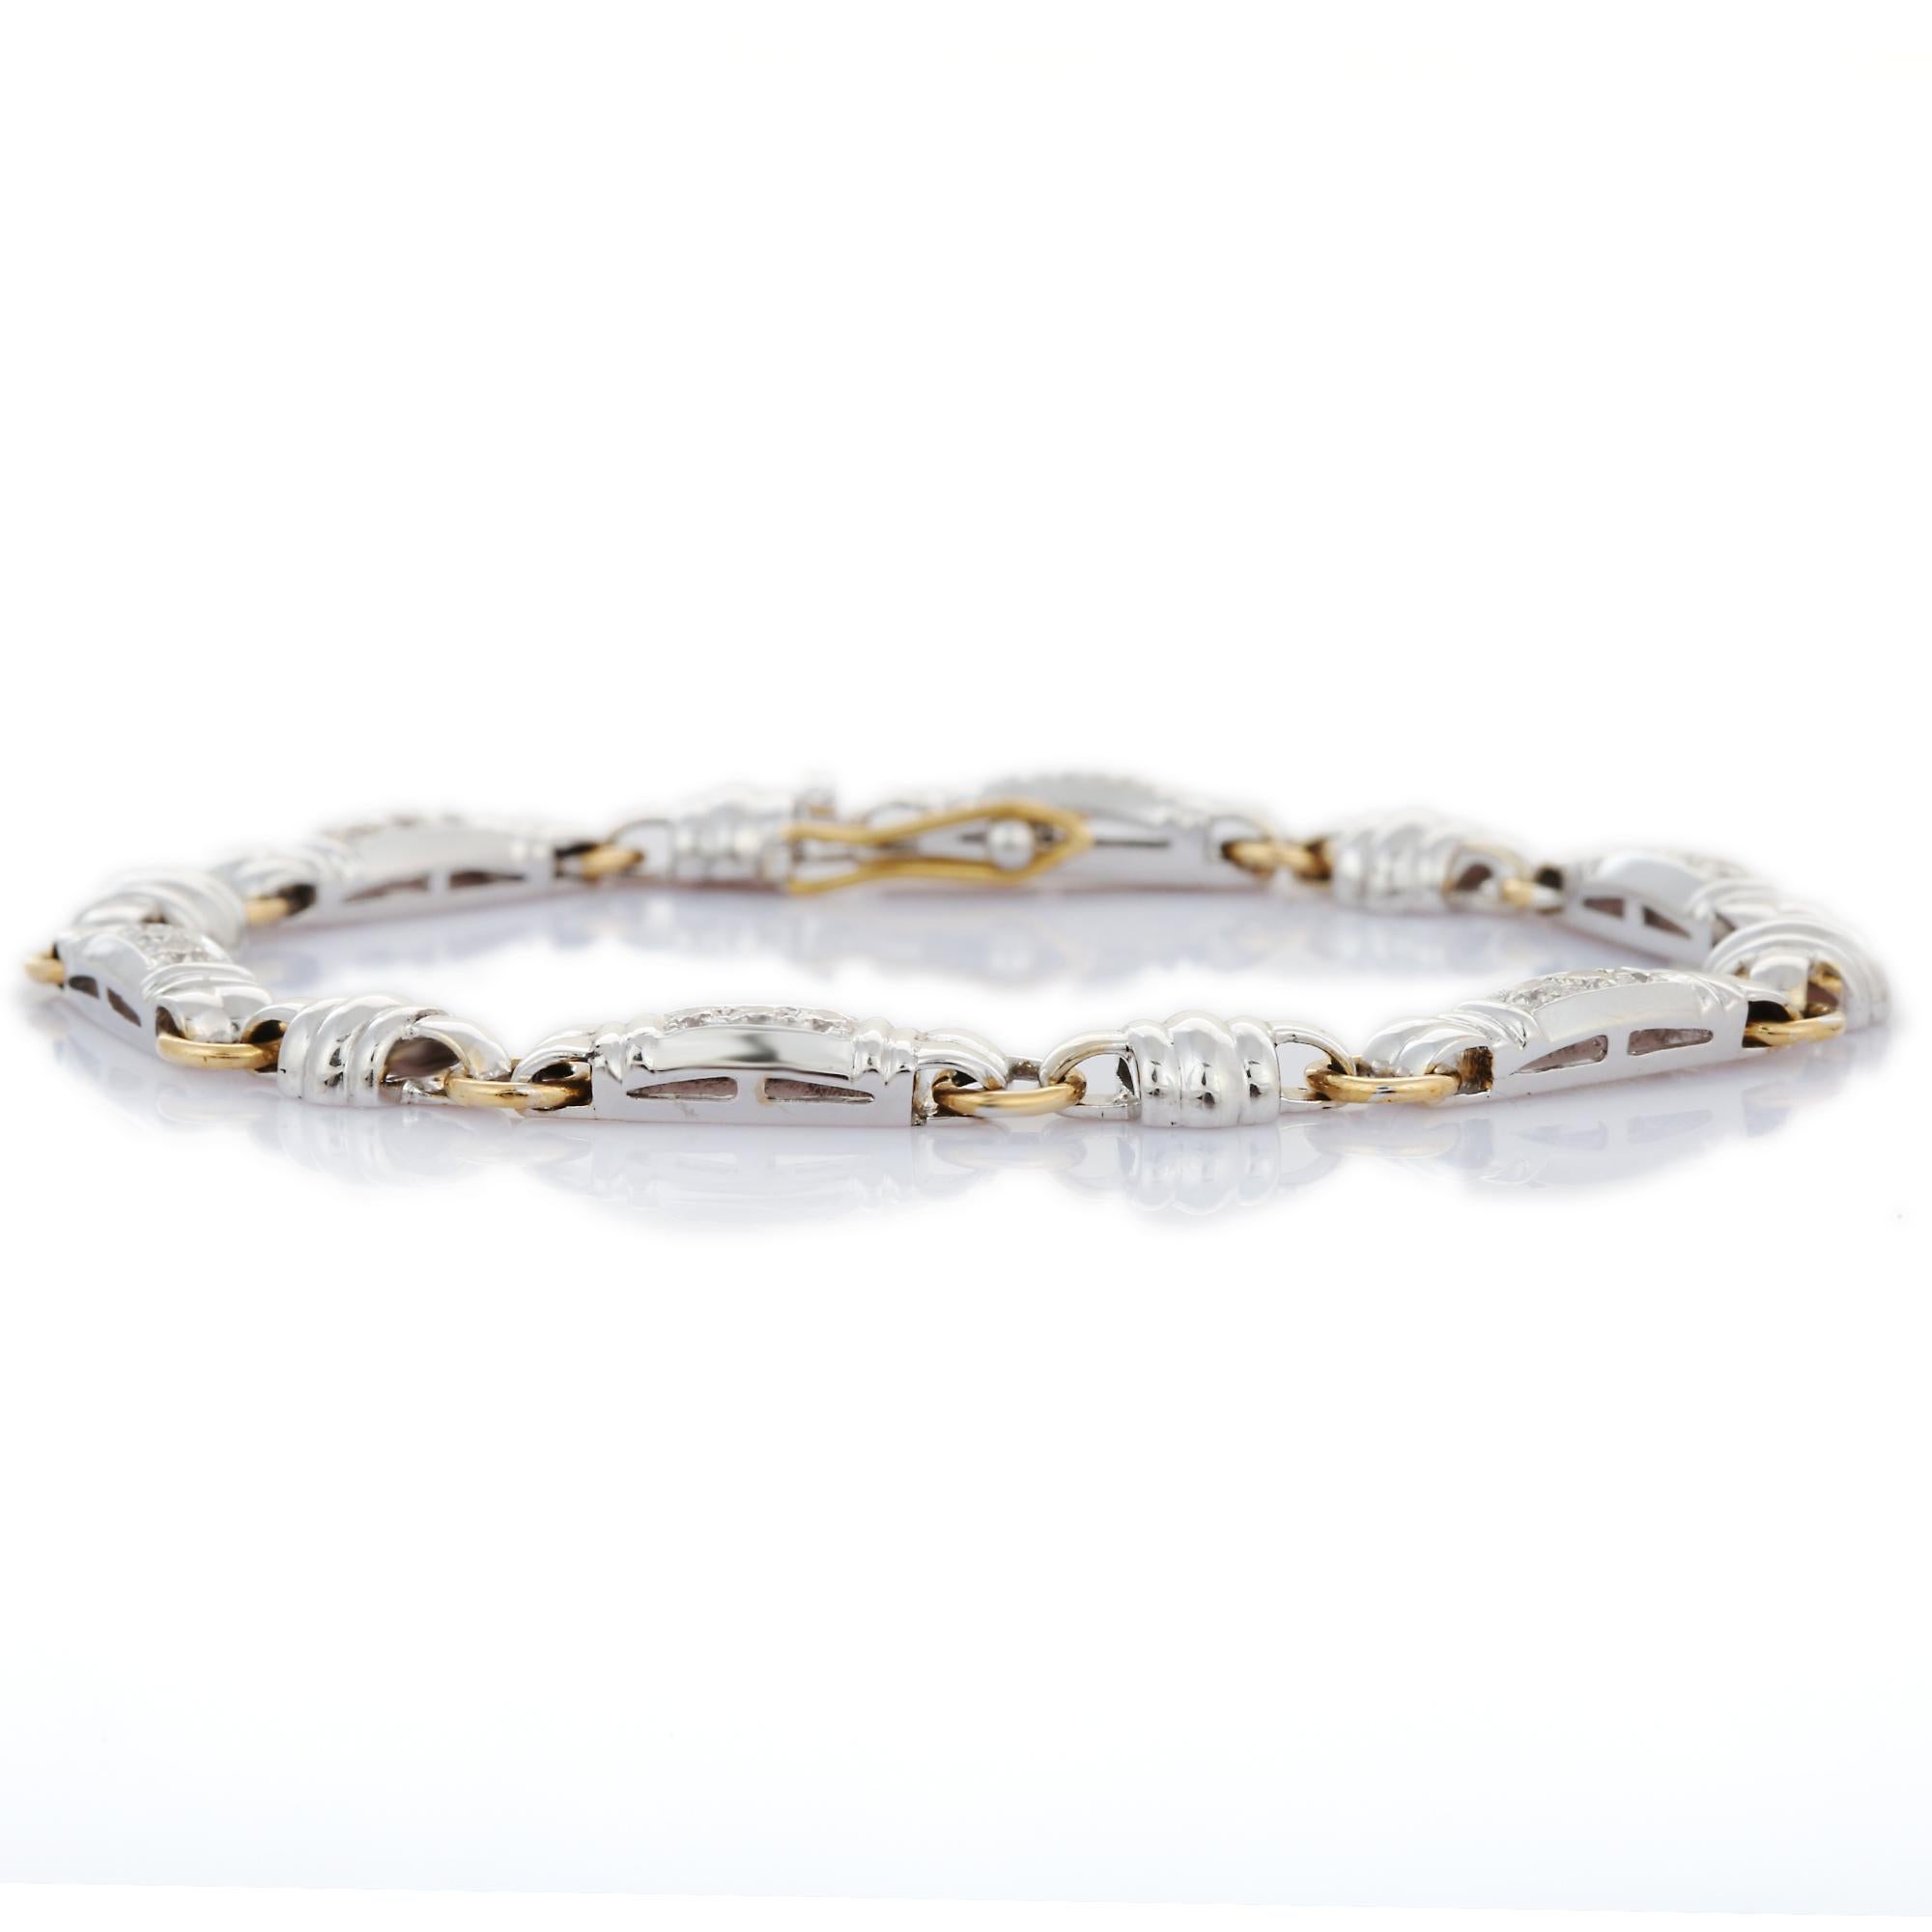 Ce bracelet pour homme Art déco en or 18 carats met en valeur des diamants naturels étincelants, d'un poids de 1,05 carat. 
Le diamant, pierre de naissance du mois d'avril, apporte l'amour, la gloire, le succès et la prospérité.
Conçu avec des